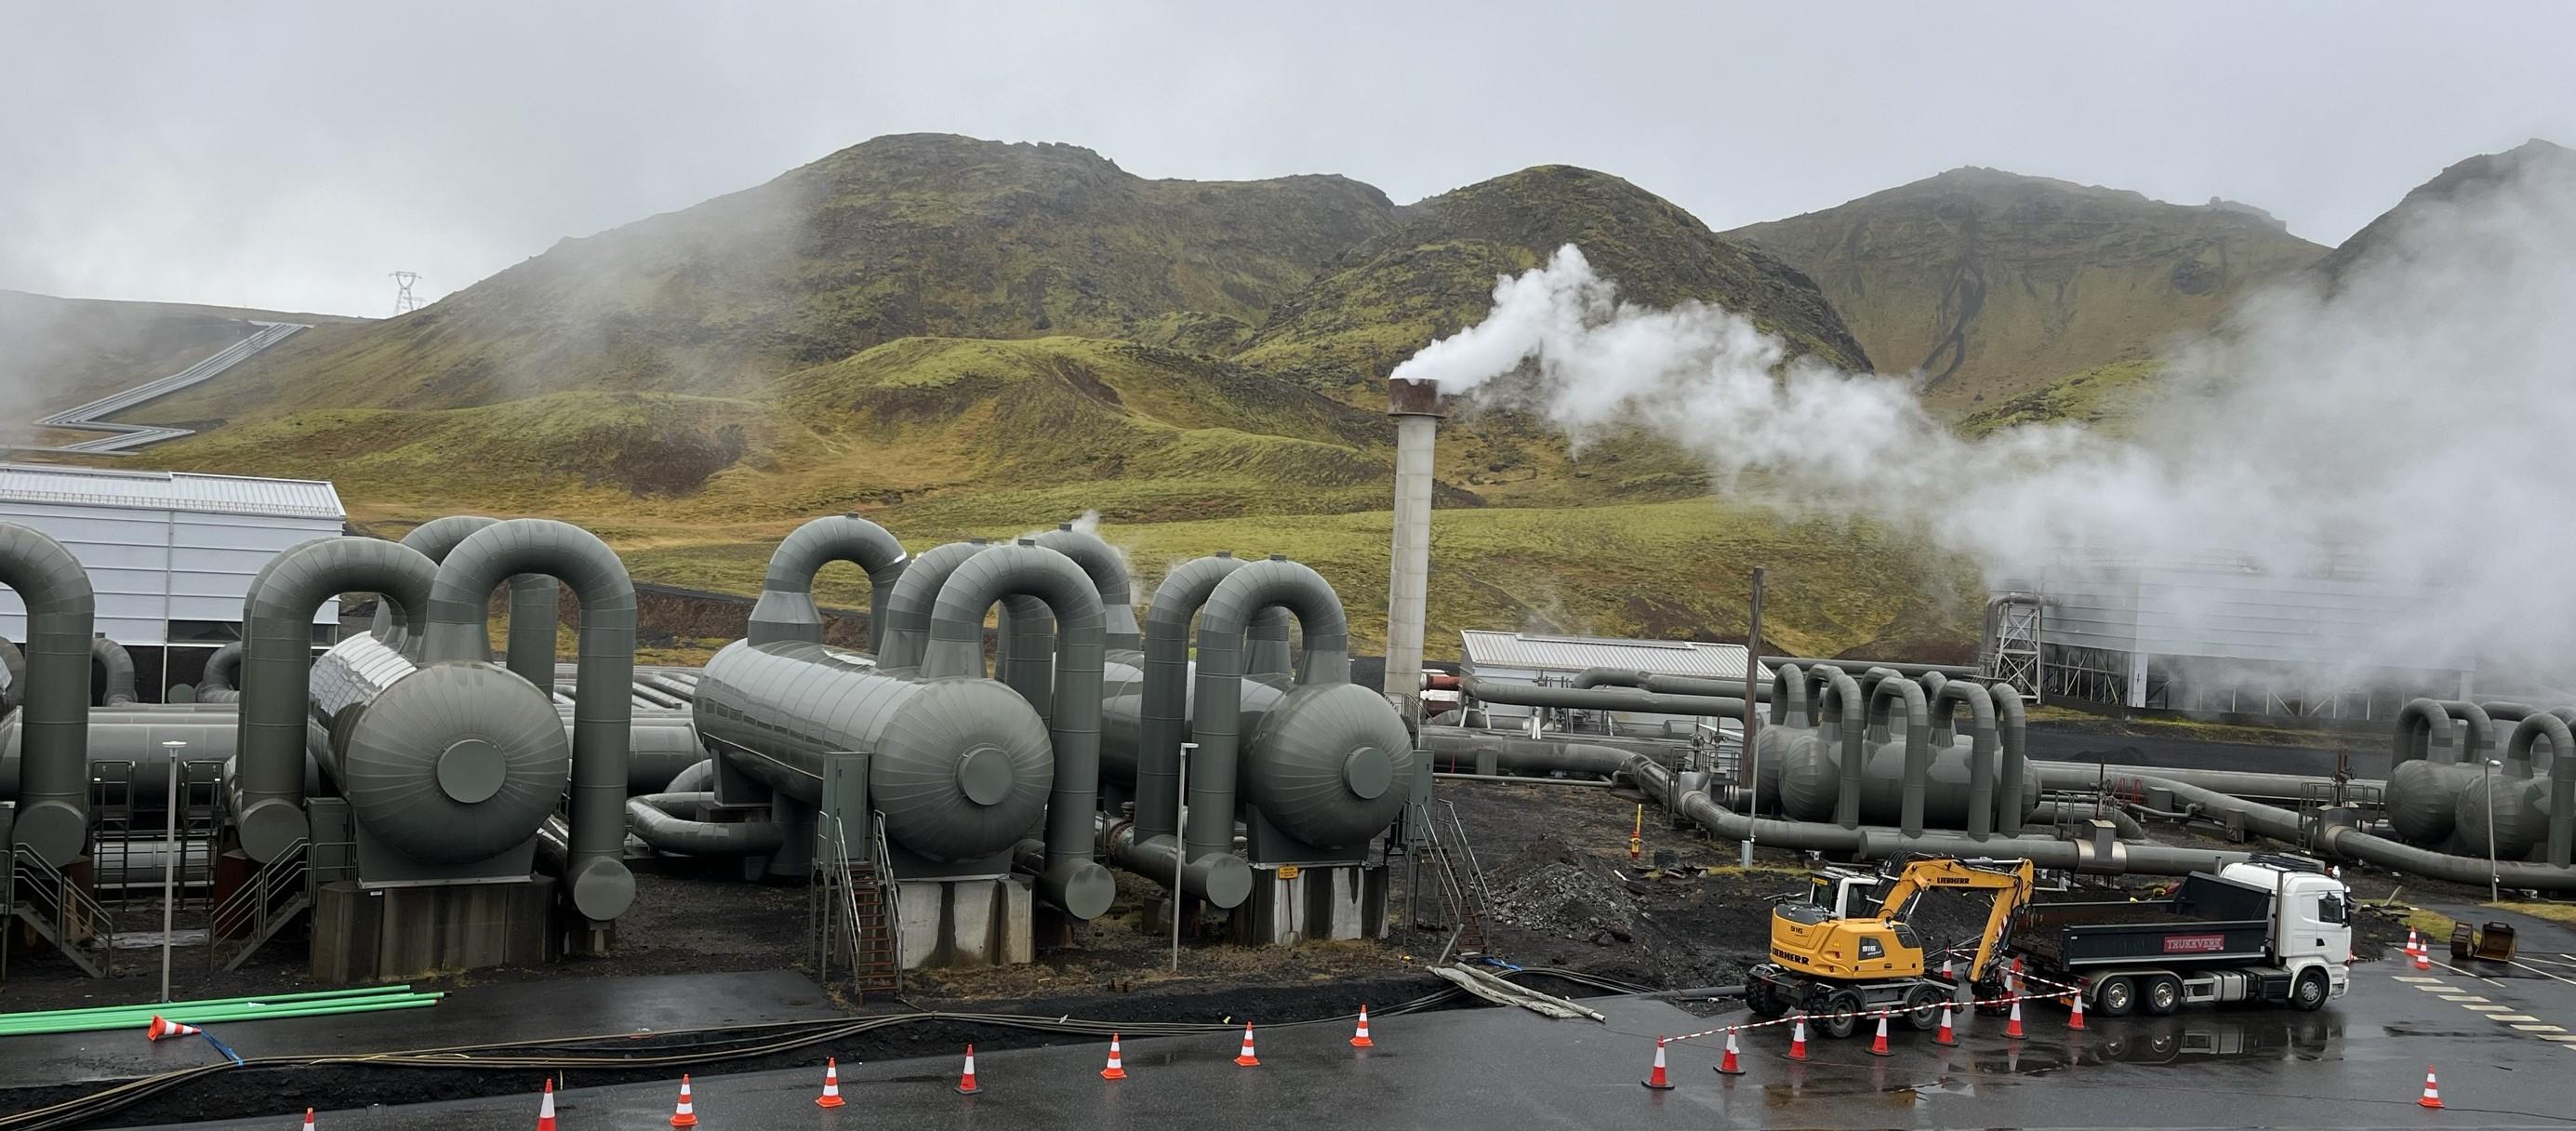 Zdjęcie przedstawia element instalacji geotermalnej na Islandii